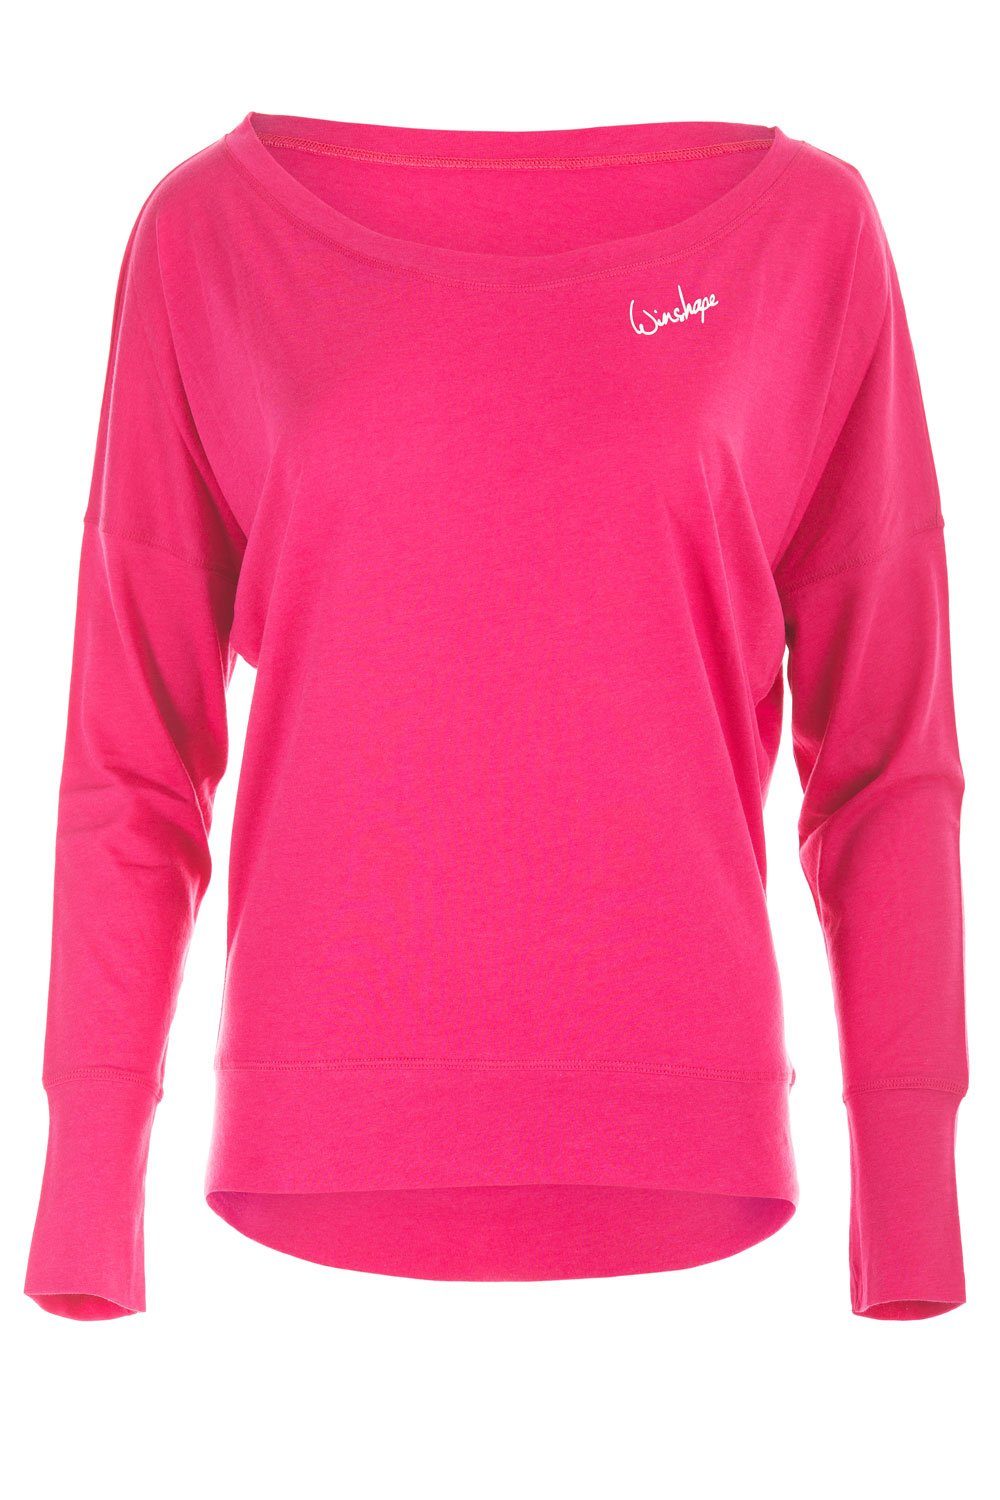 winshape shirt met lange mouwen mcs002 ultralicht roze